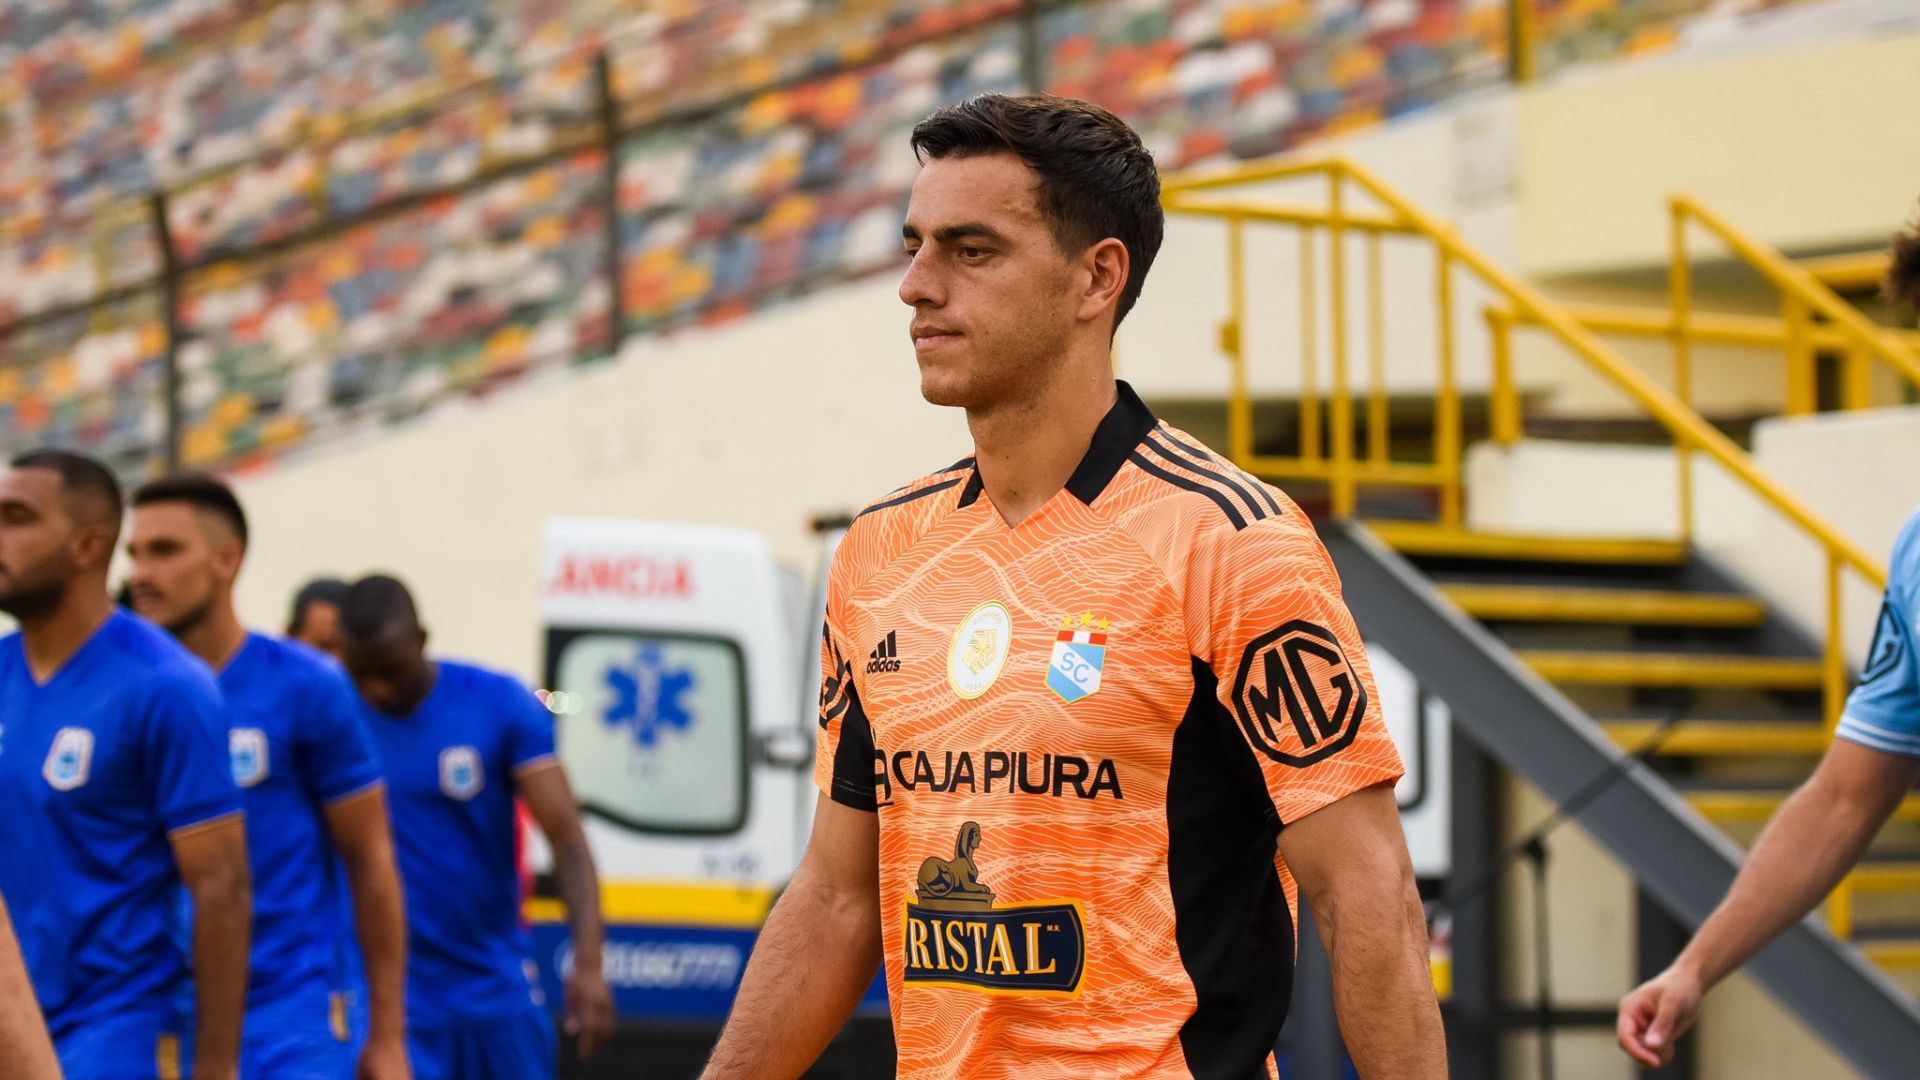 Alejandro Duarte podría recibir sanción de Sporting Cristal por jugar fulbito con sus amigos